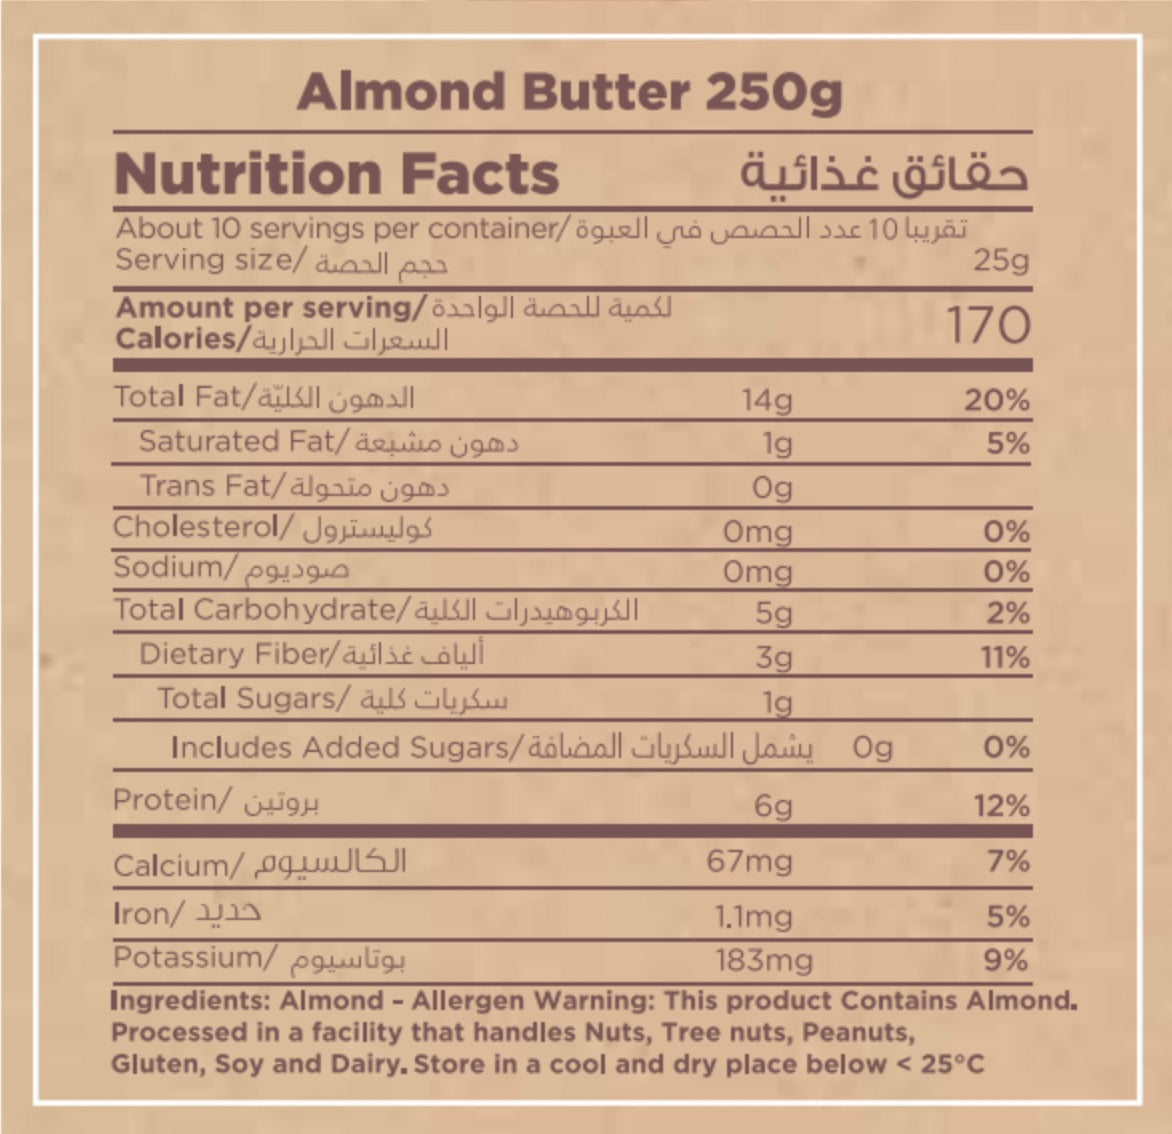 MUNCH BOX Almond Butter, 250g